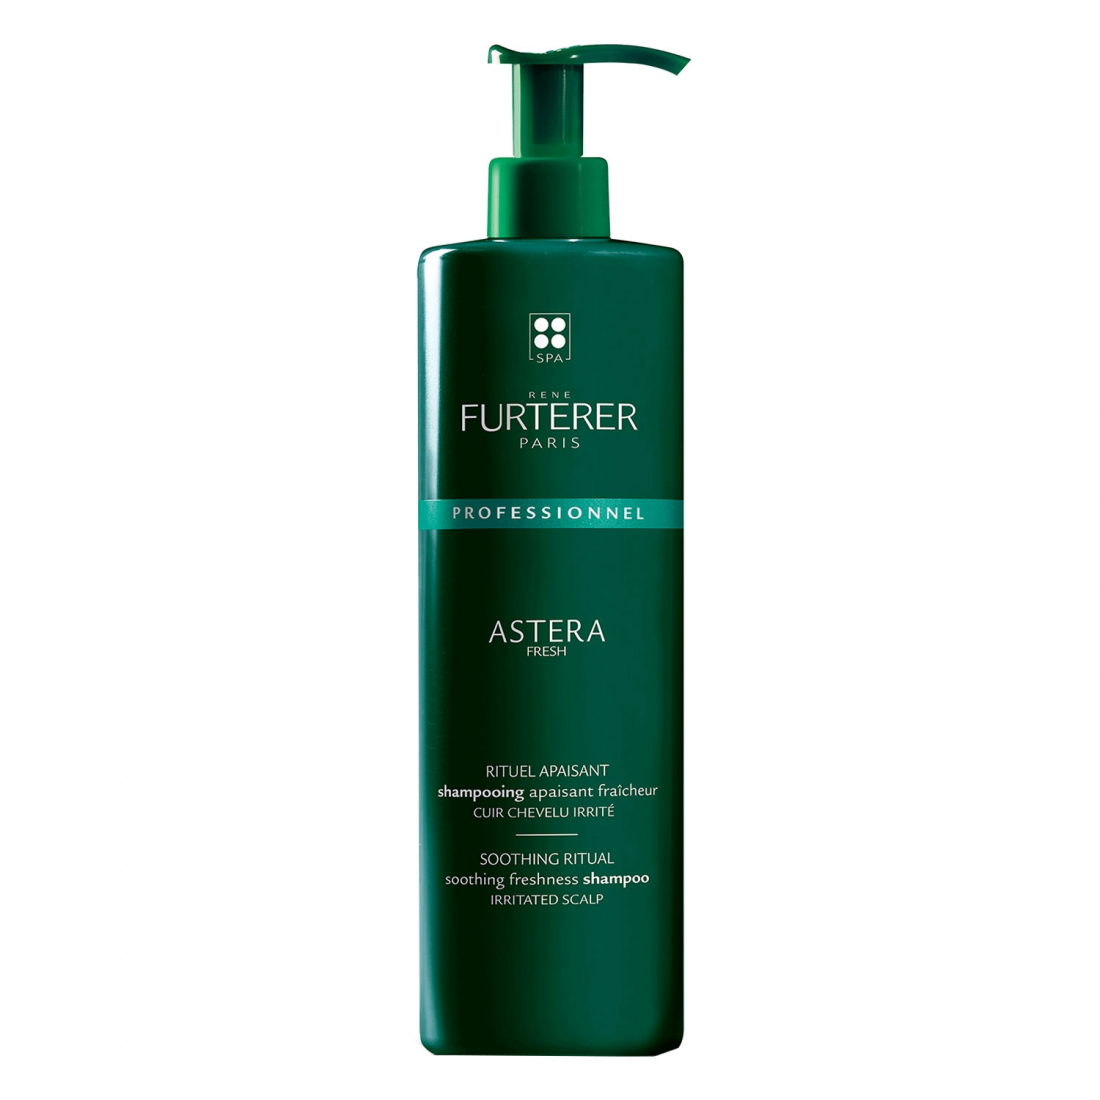 'Astera Fresh Rituel Apaisant Fraîcheur' Shampoo - 600 ml